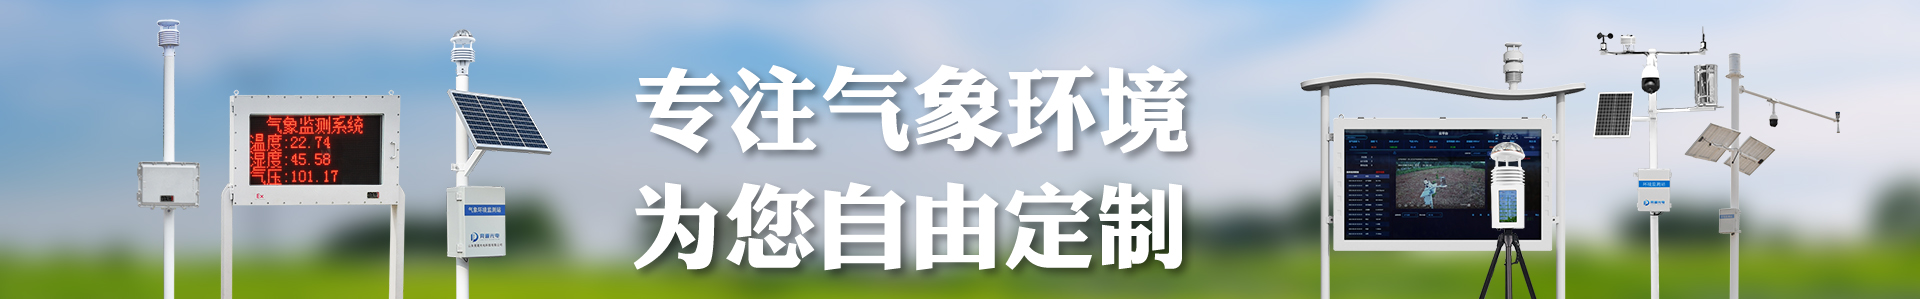 水土流失自动监测站-径流泥沙测量仪-自动气象站-小型气象站-防爆气象站-光伏气象站-完美体育·(中国)官方网站-365WM SPORTS